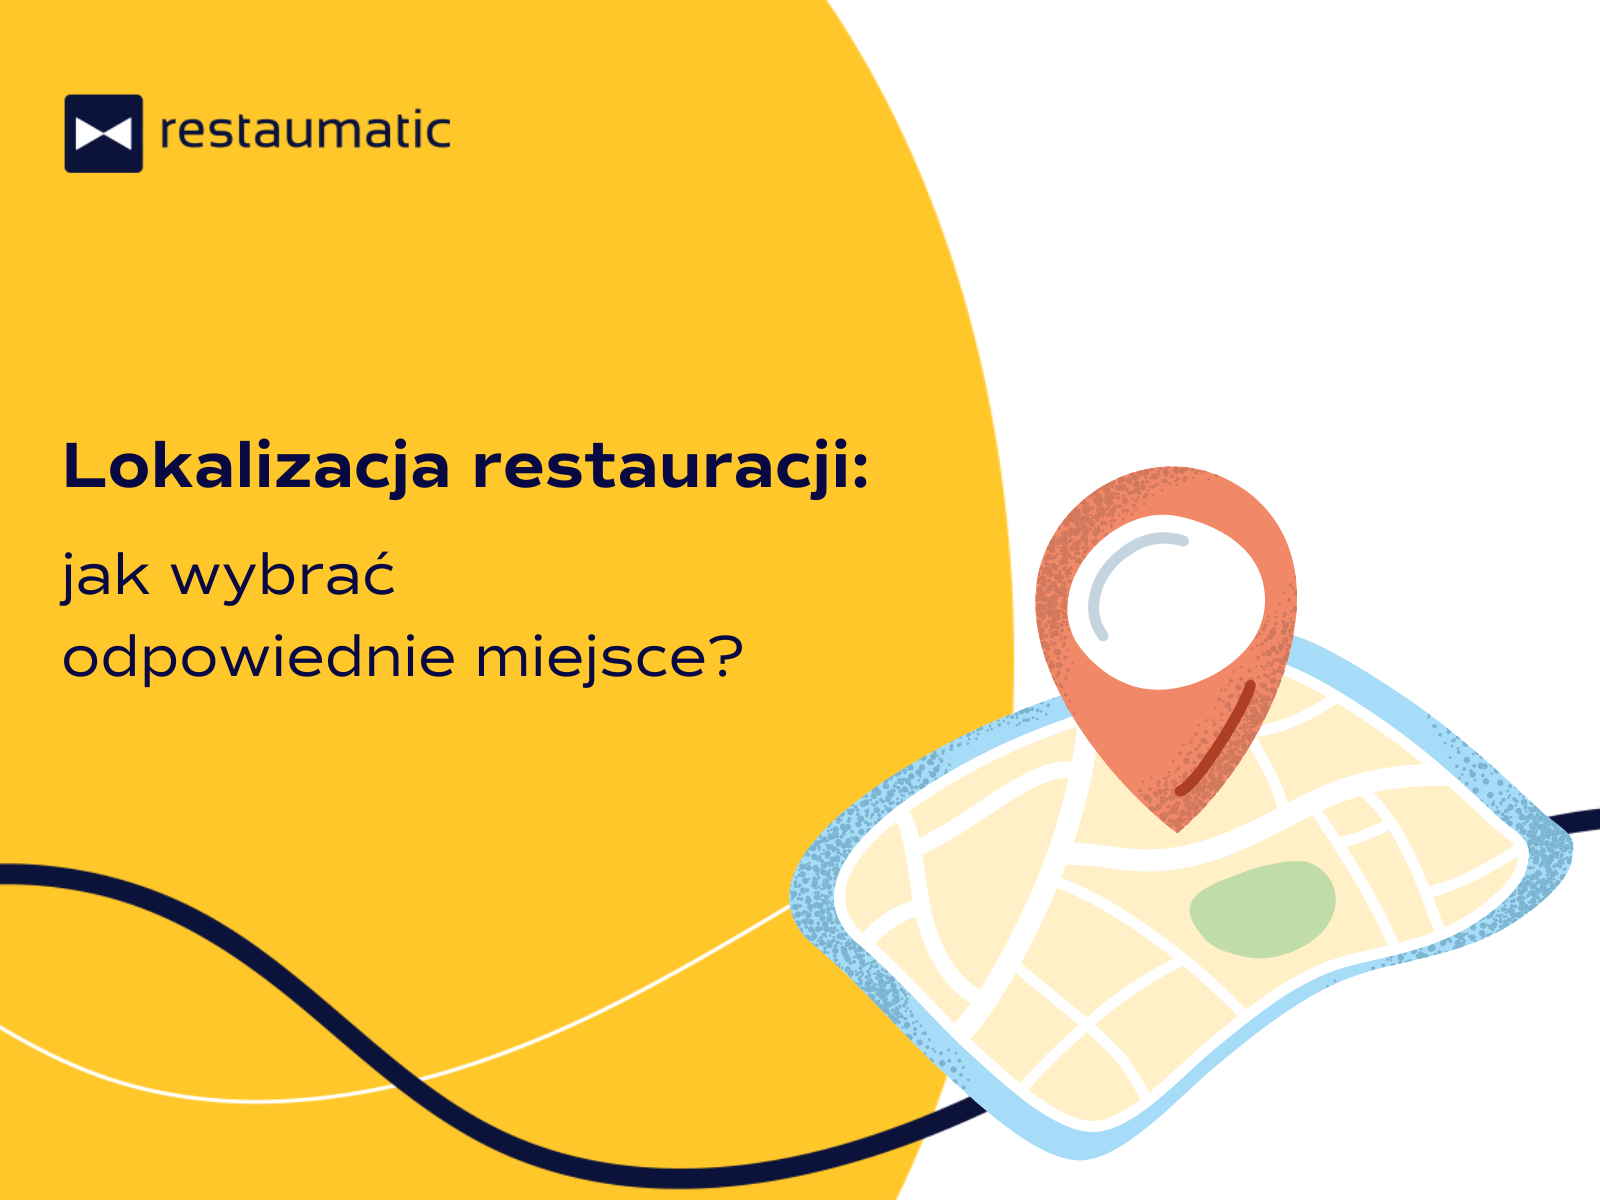 Lokalizacja restauracji: jak wybrać odpowiednie miejsce?